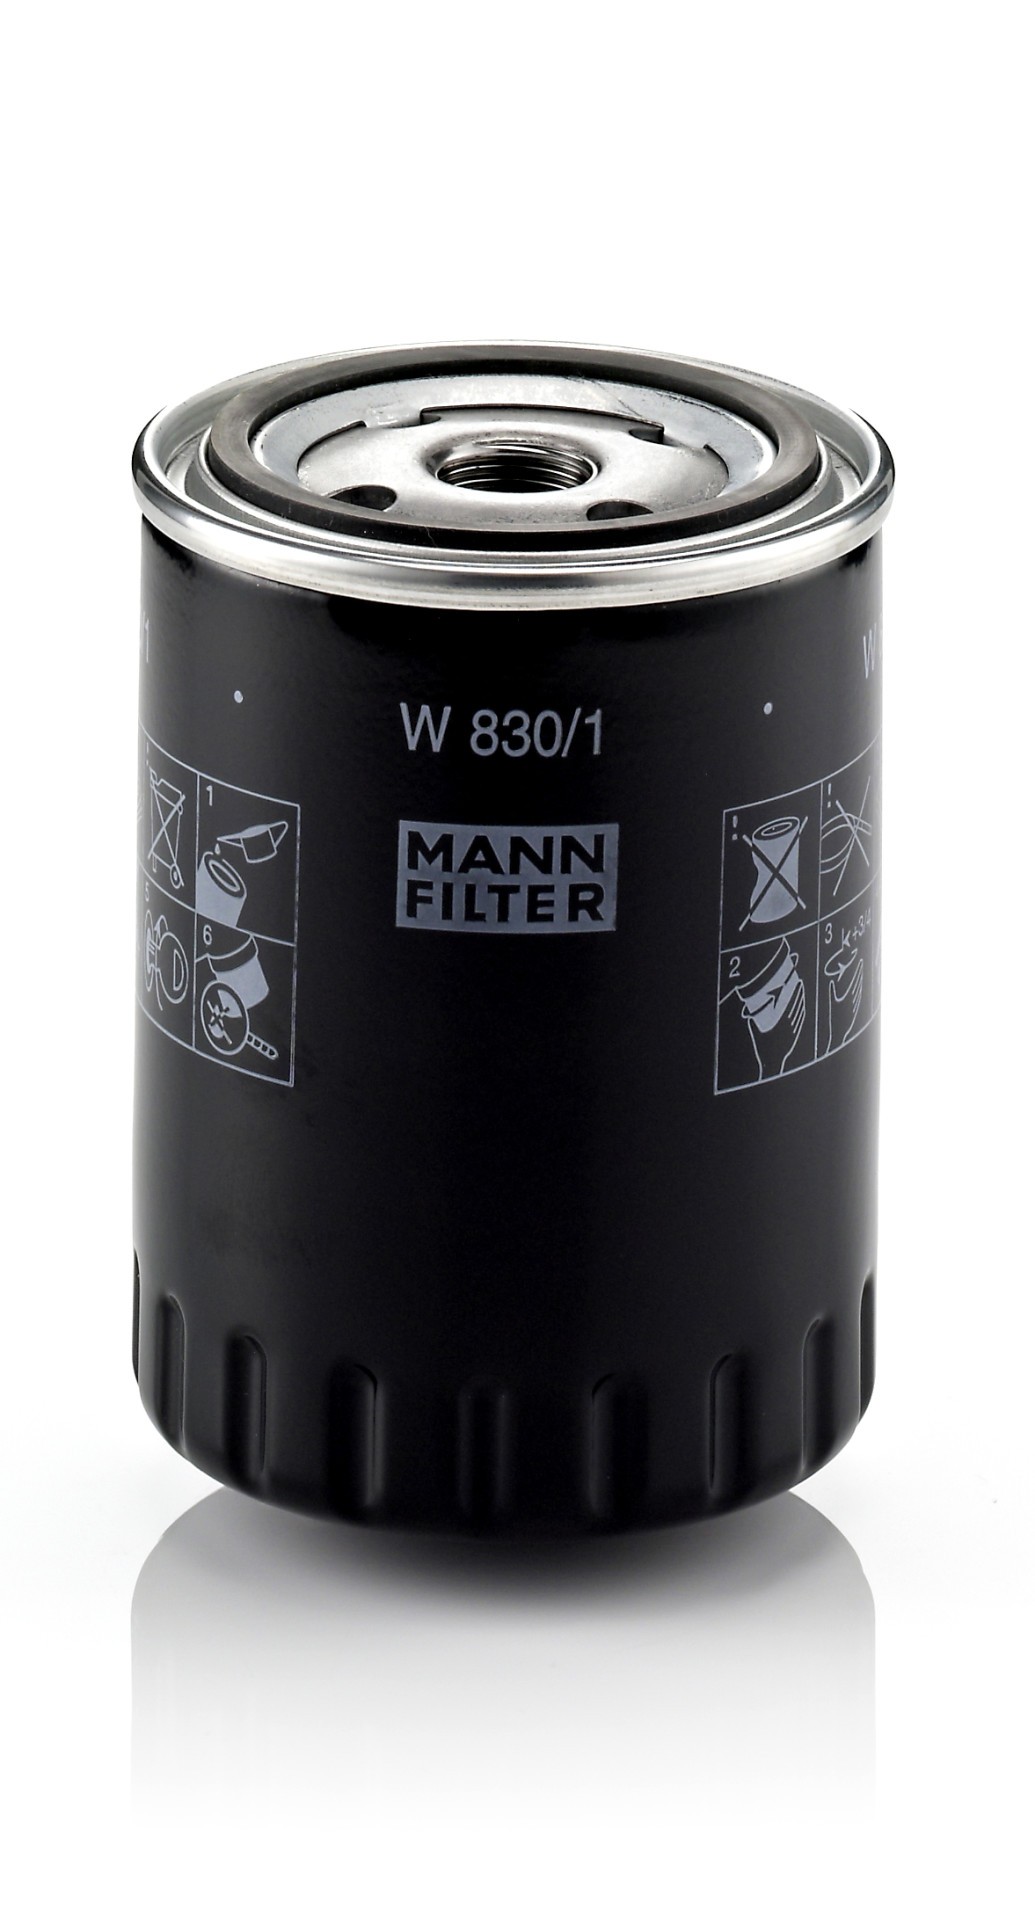 MANN-FILTER lfilter, Art.-Nr. W 830/1